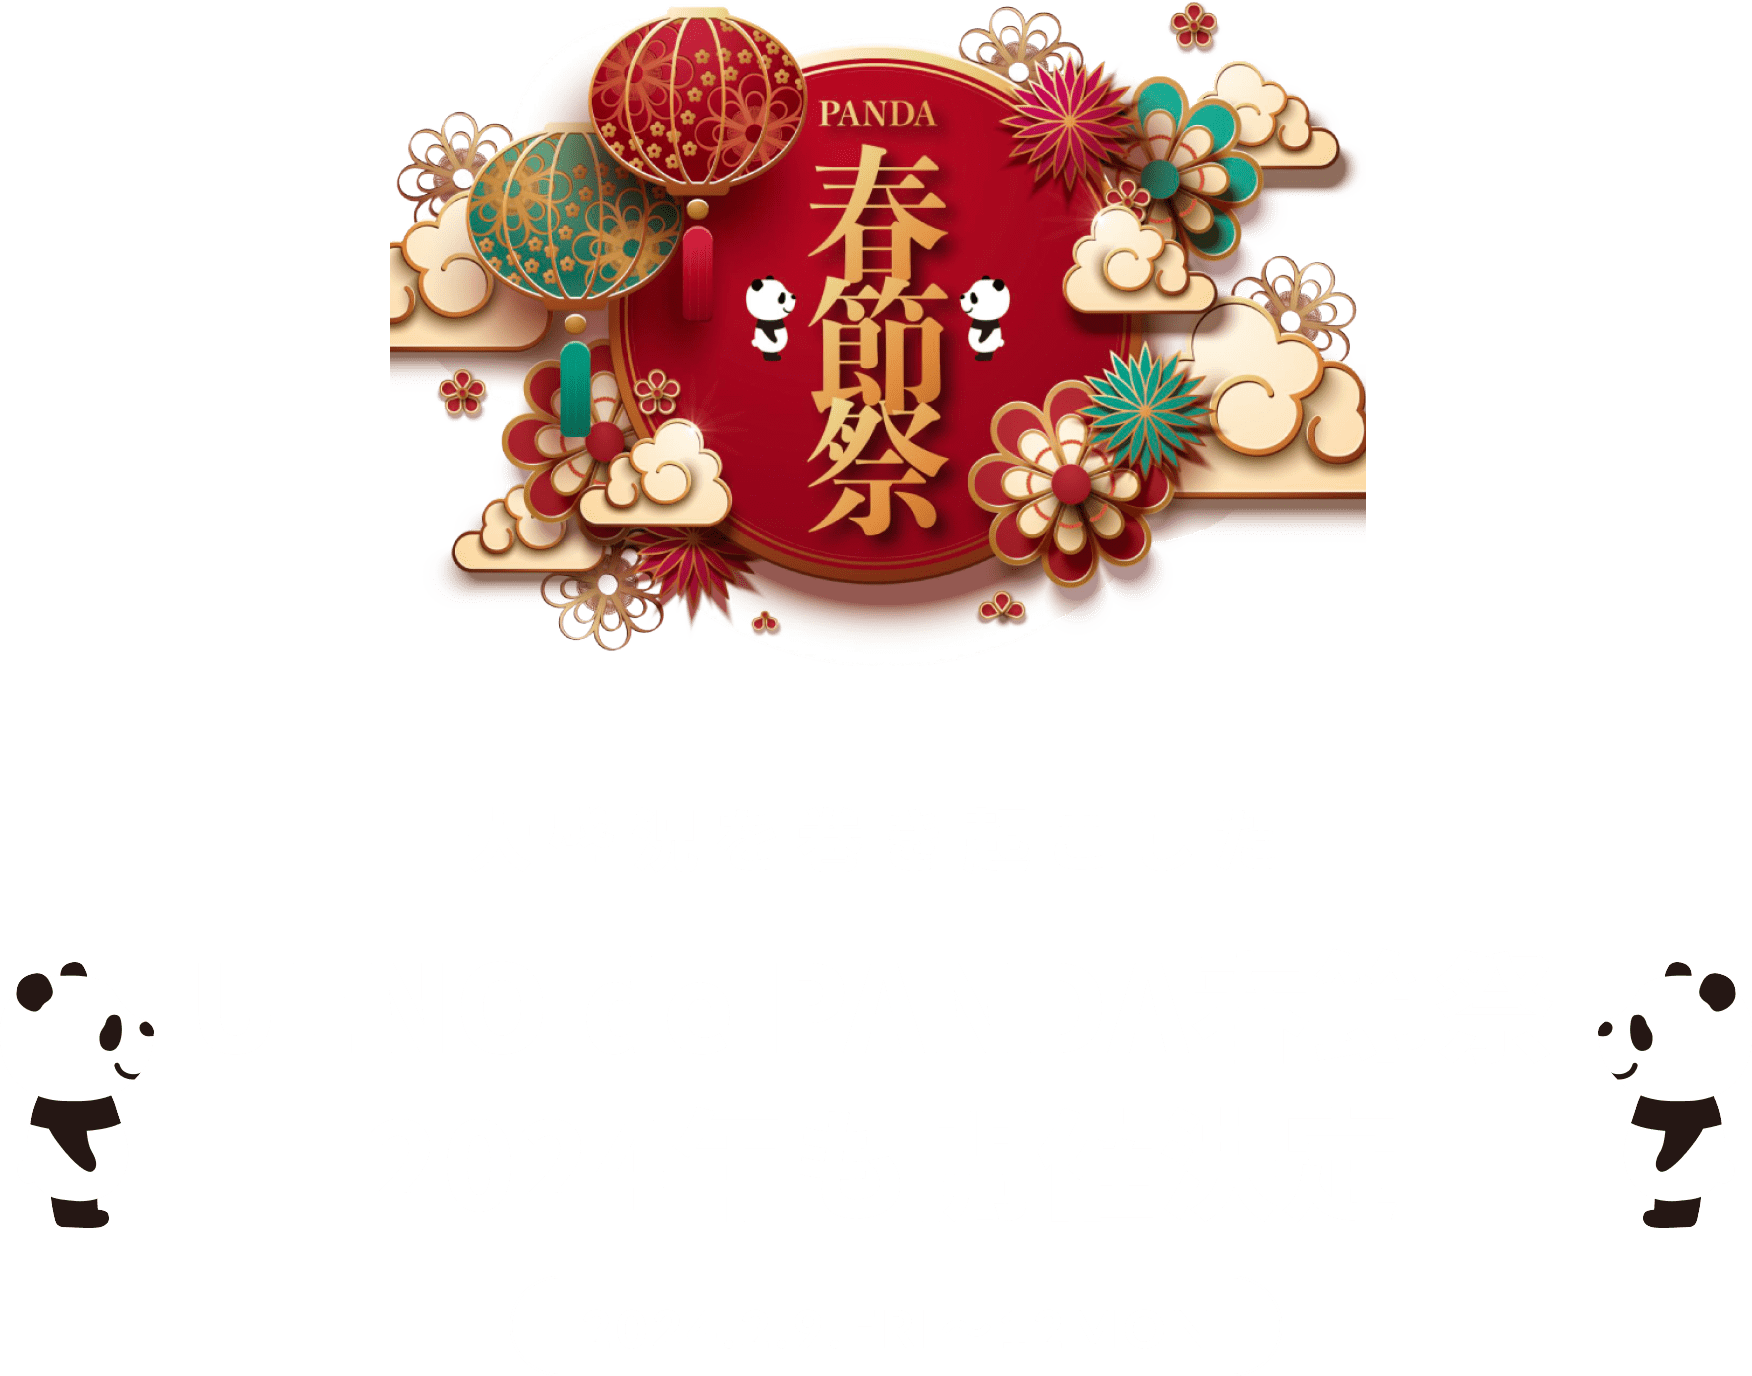 UENO de PANDA春節祭 2024年も開催決定